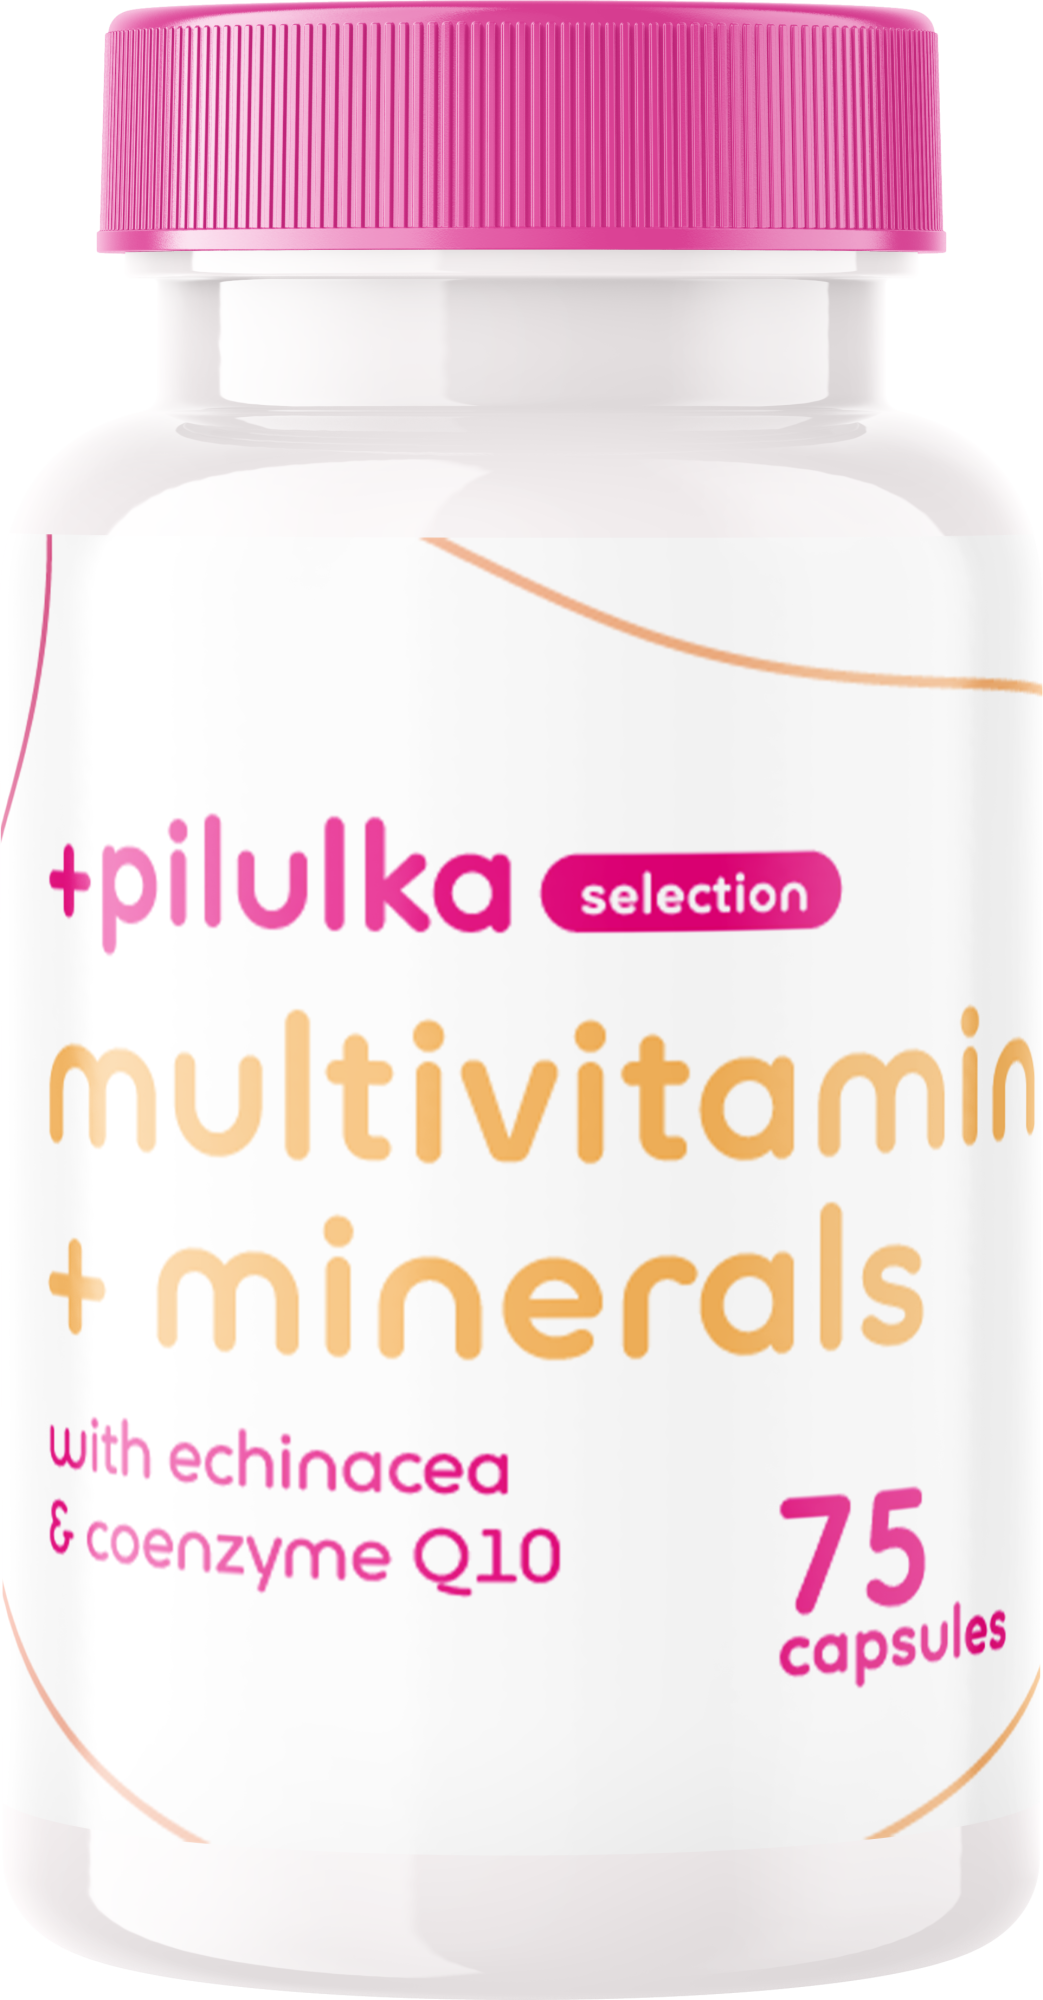 Pilulka Selection Multivitamin ásványi anyagokkal - Echinaceával + Q10 koenzimmel 75 kapszula